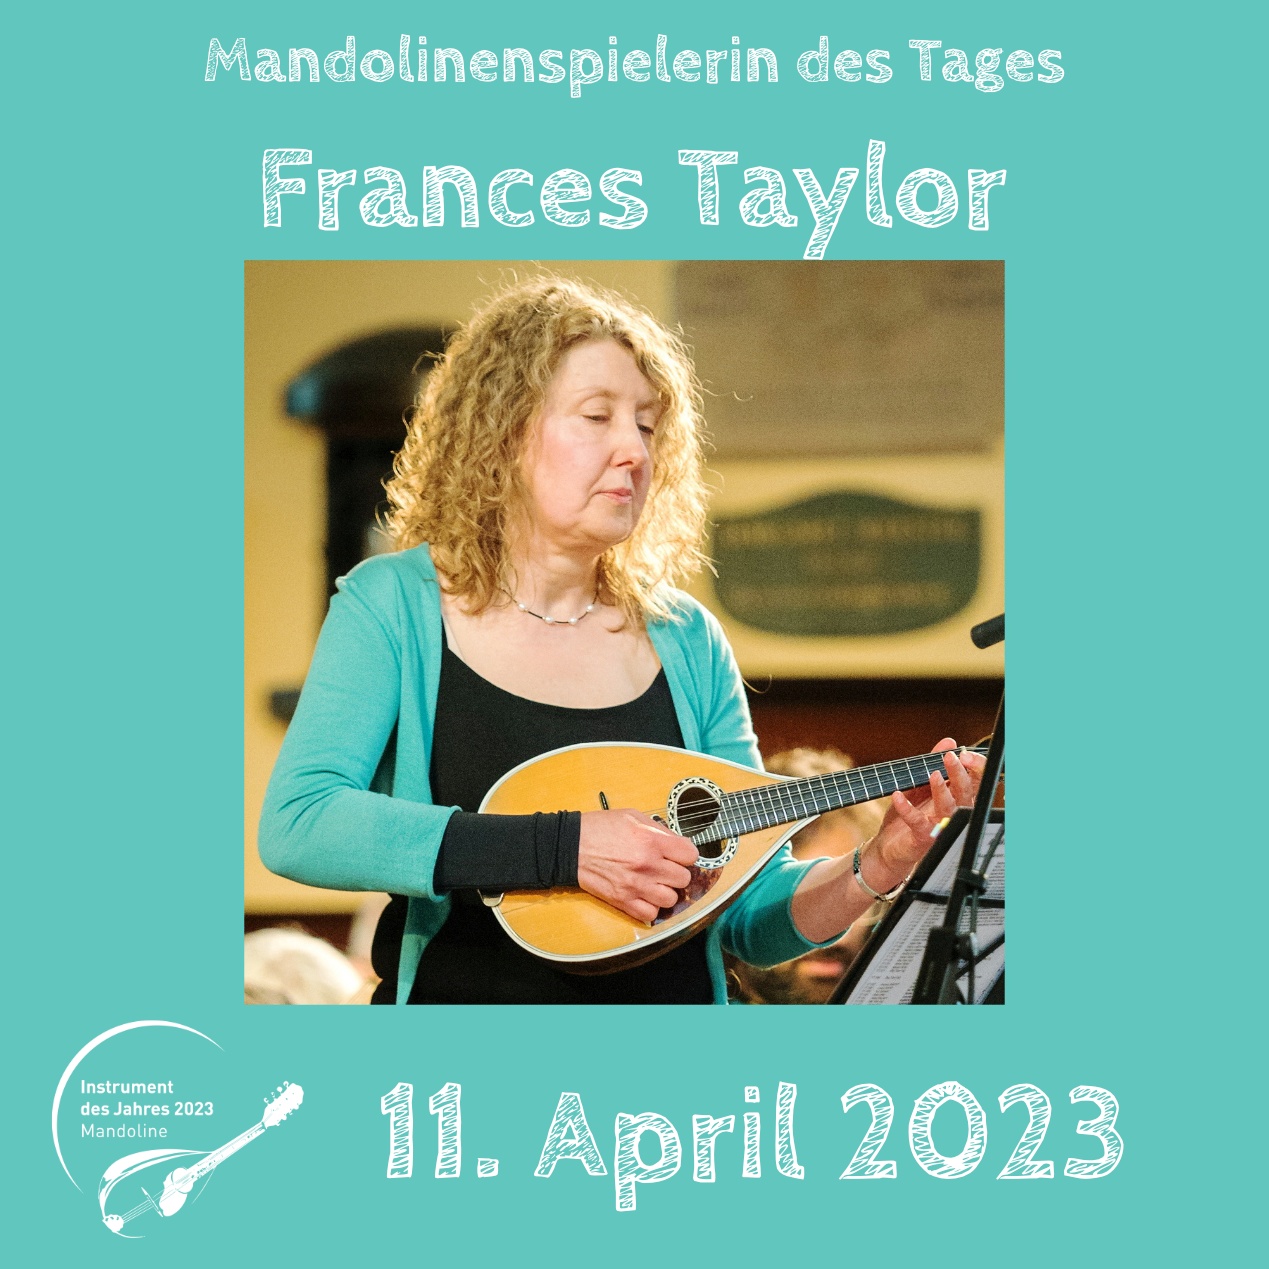 Frances Taylor Instrument des Jahres 2023 Mandolinenspieler Mandolinenspielerin des Tages